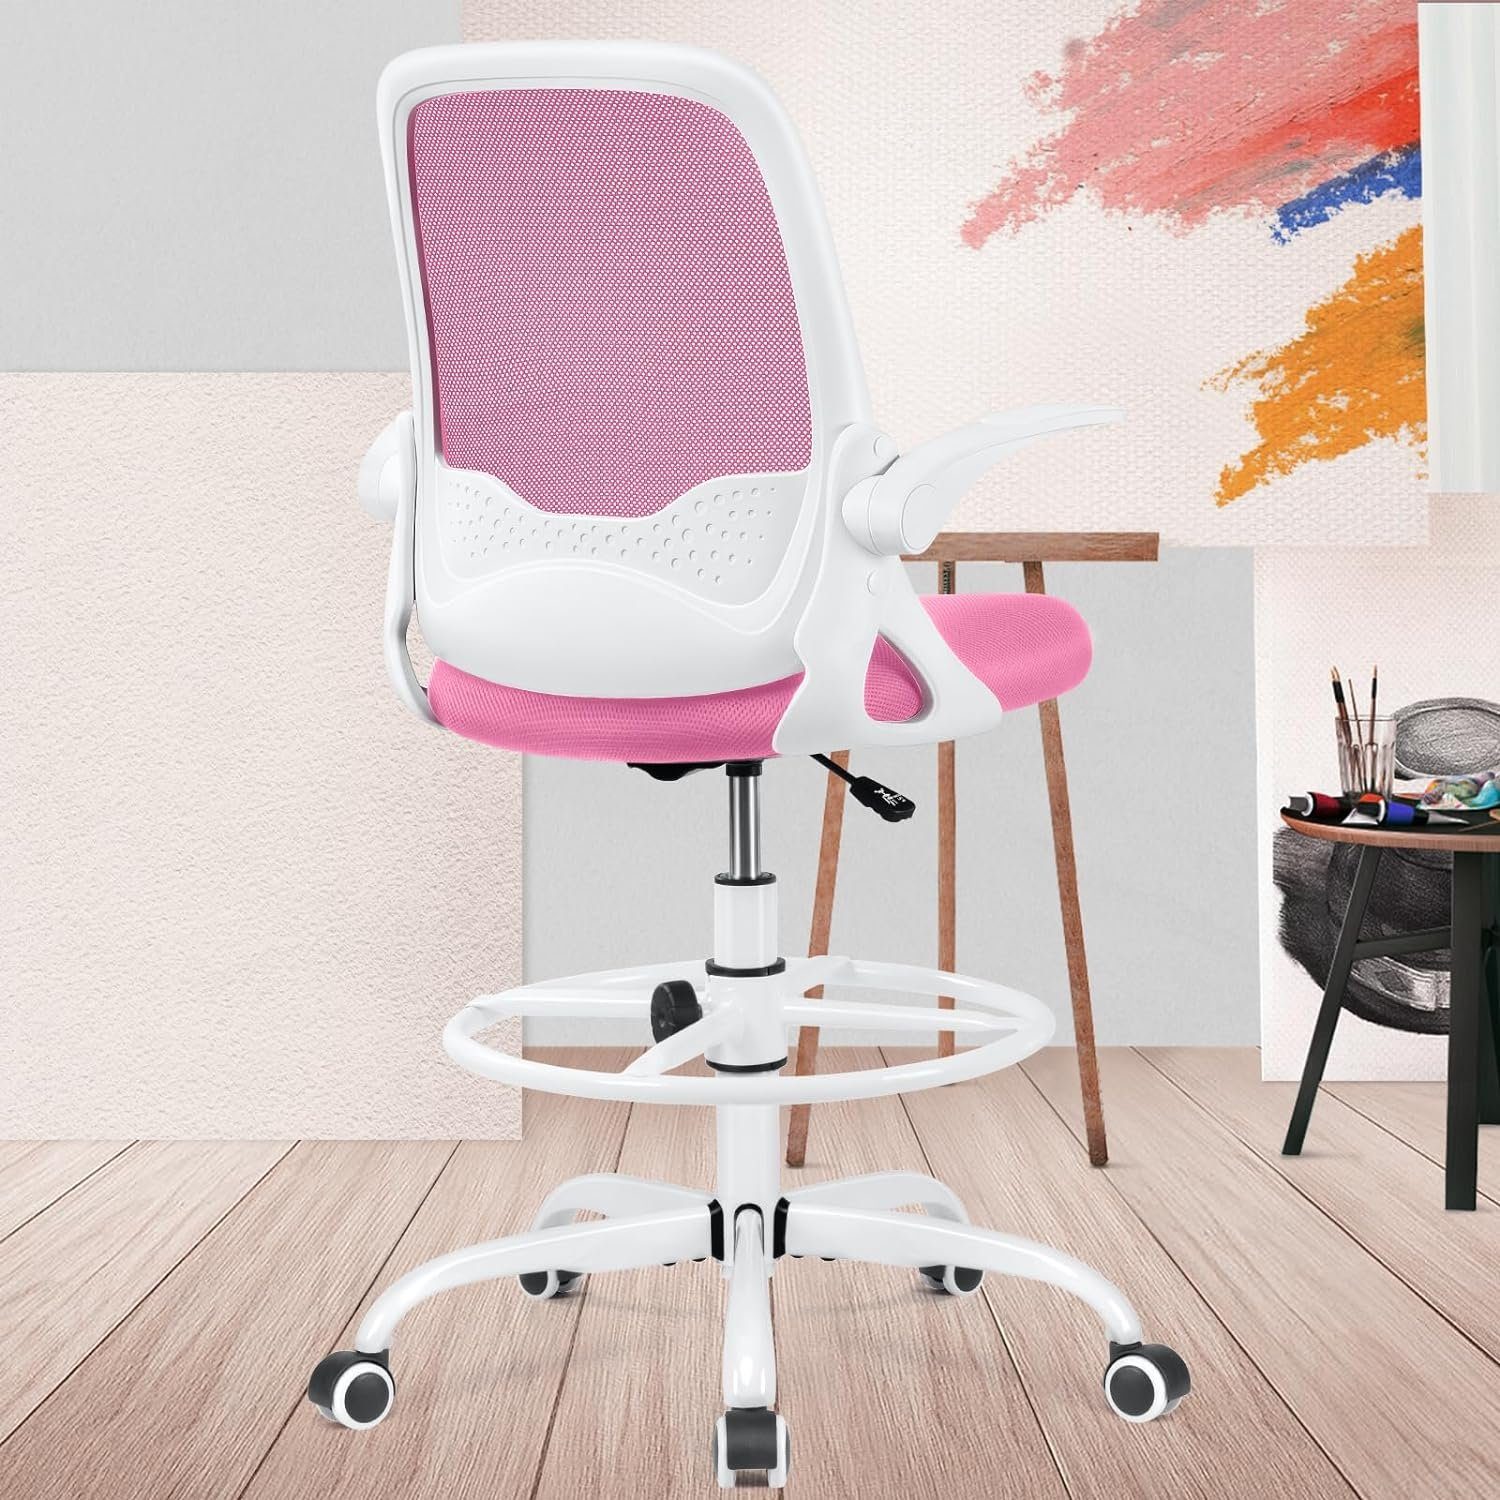 KERDOM Bürostuhl (Bürostuhl ergonomisch: Schreibtischstuhl mit verstellbarem Sitz), Bürostuhl Ergonomisch, Schreibtischstuhl mit umklappbaren Armlehnen